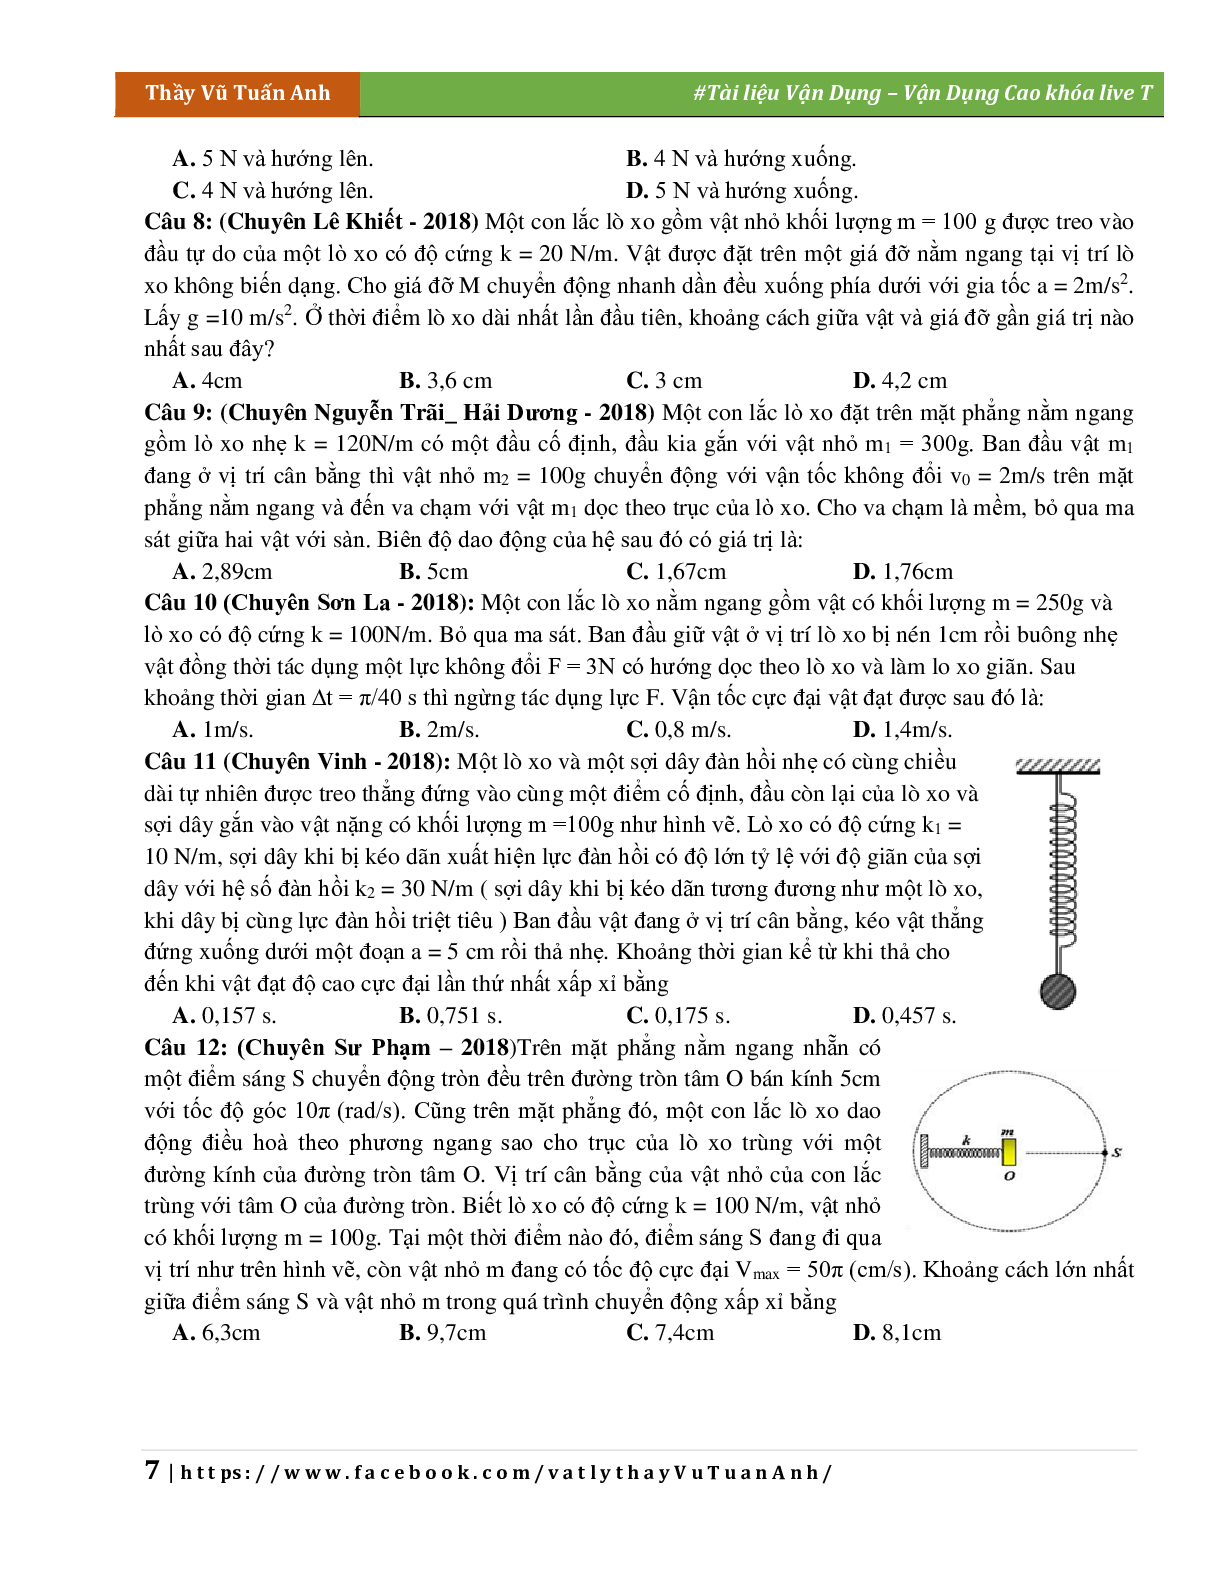 Đề Vận Dụng Cao Chương Dao Động Cơ Học Môn Vật Lý Lớp 12 (trang 7)